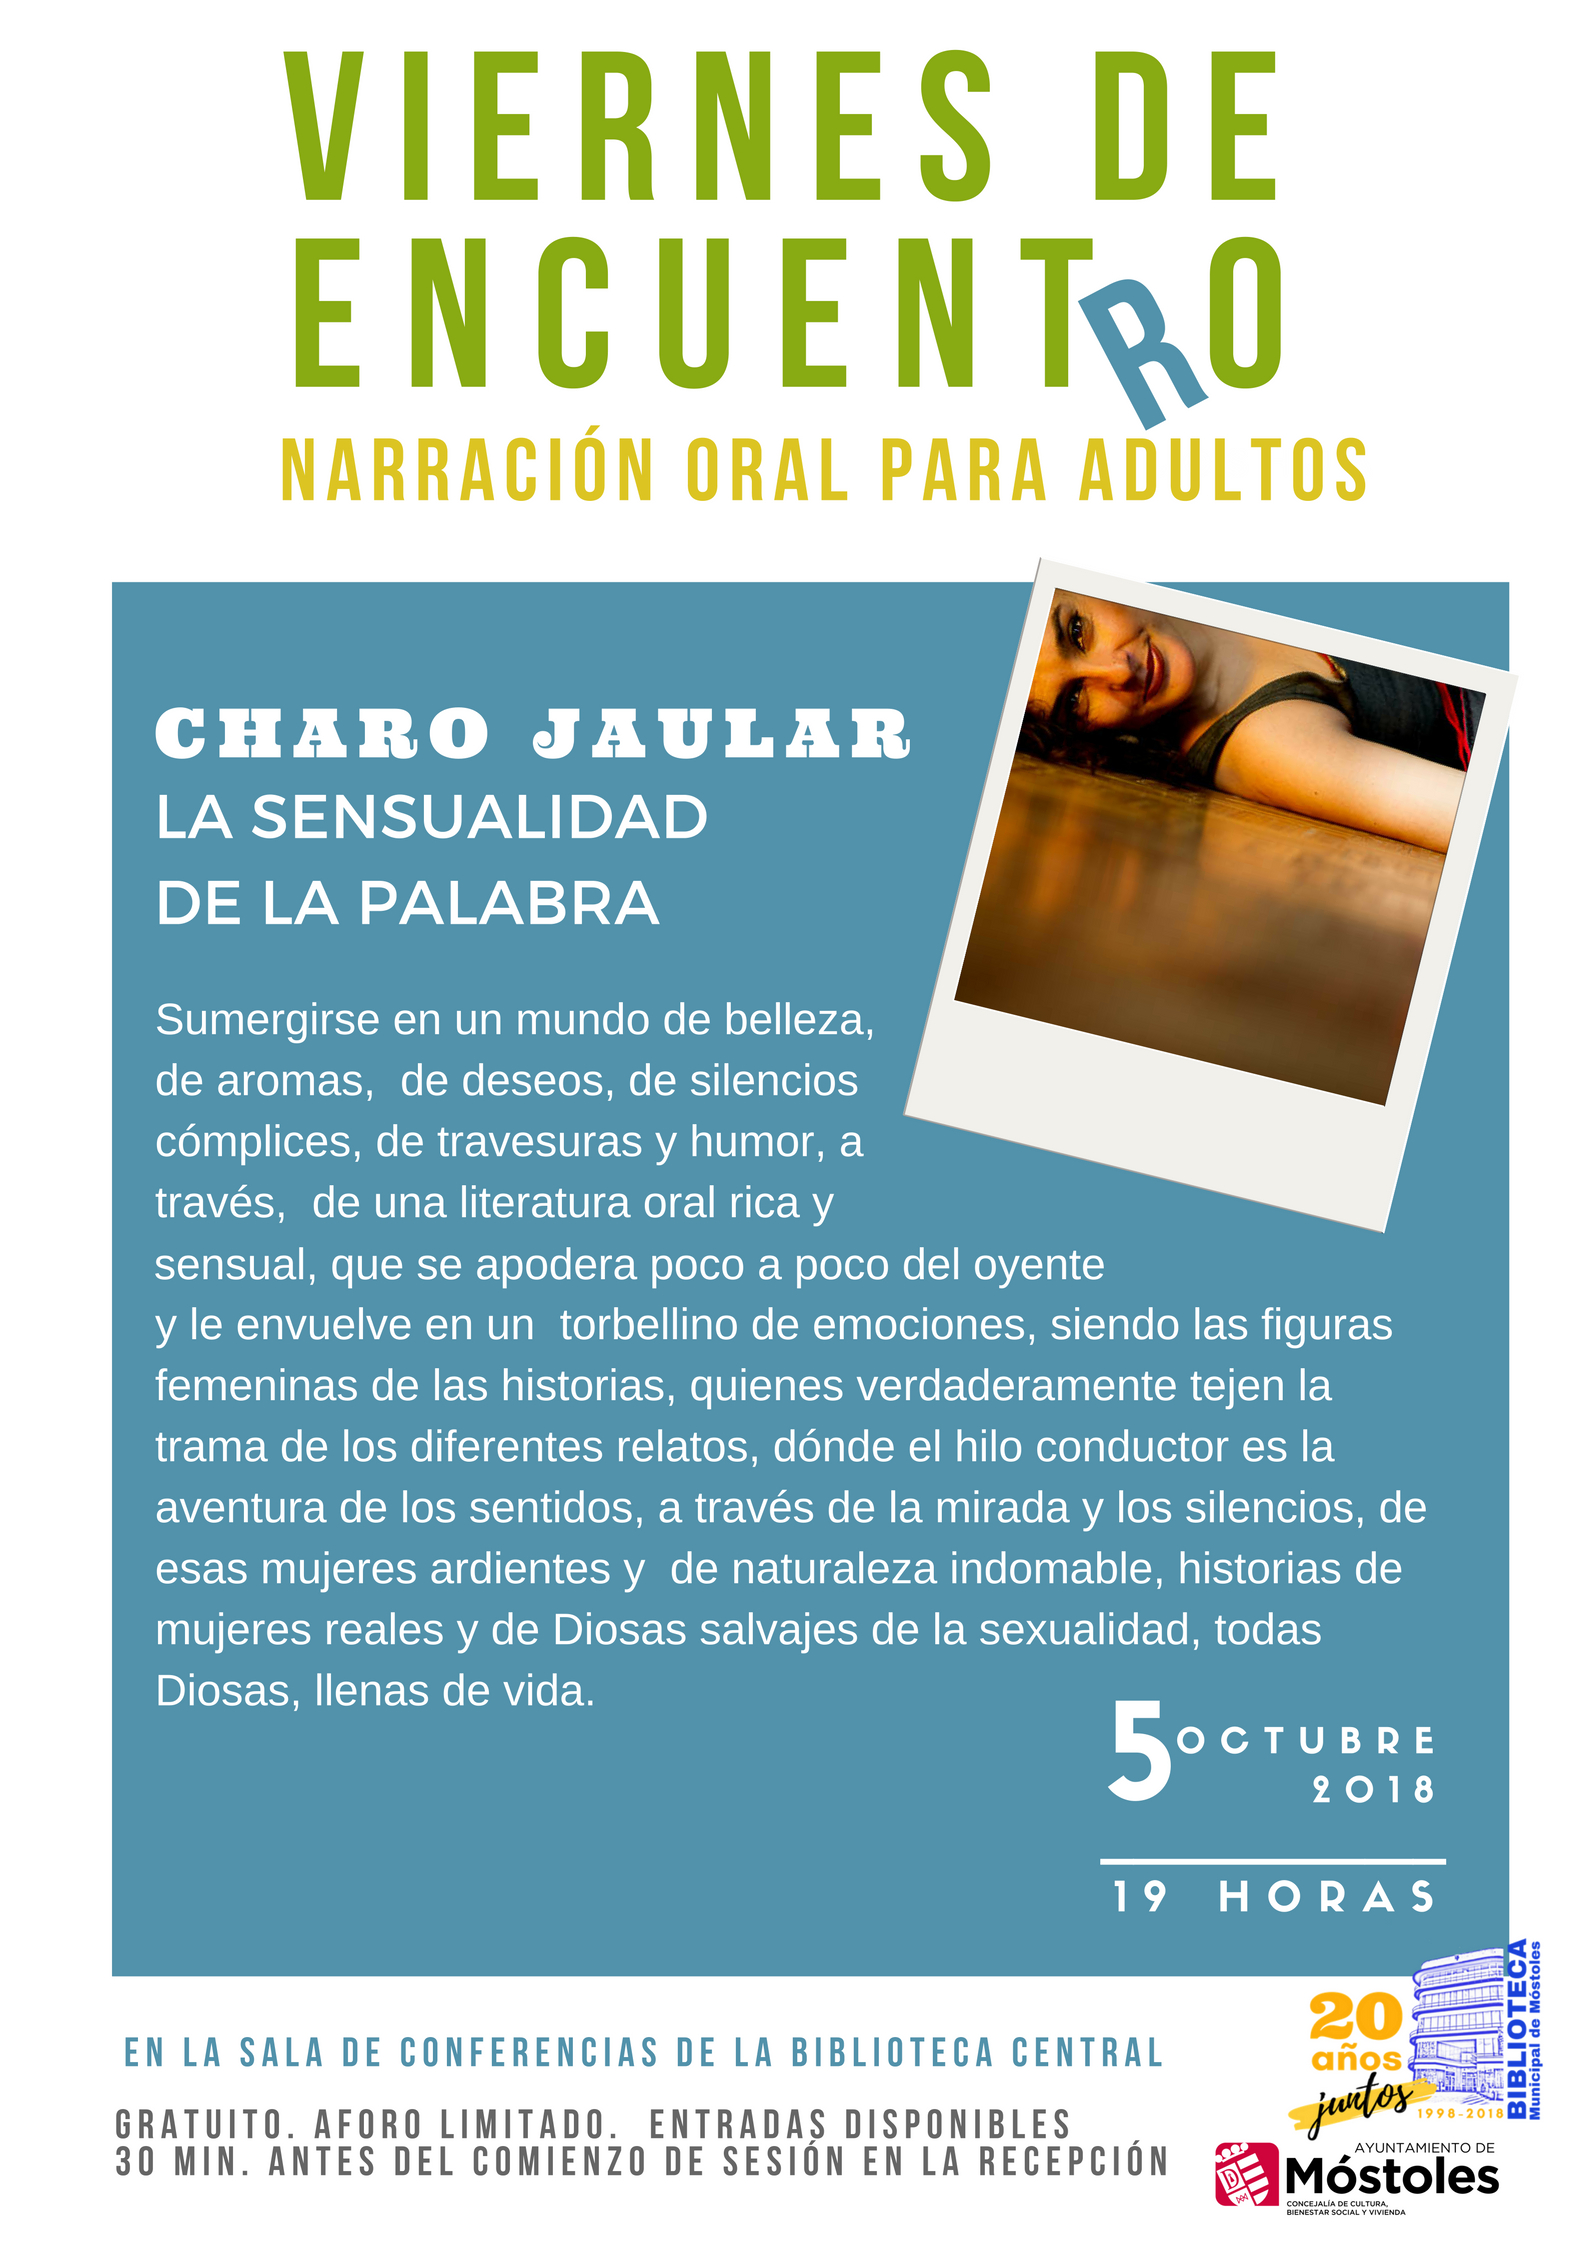 Viernesdeencuentro 2018 - Charo Jaular